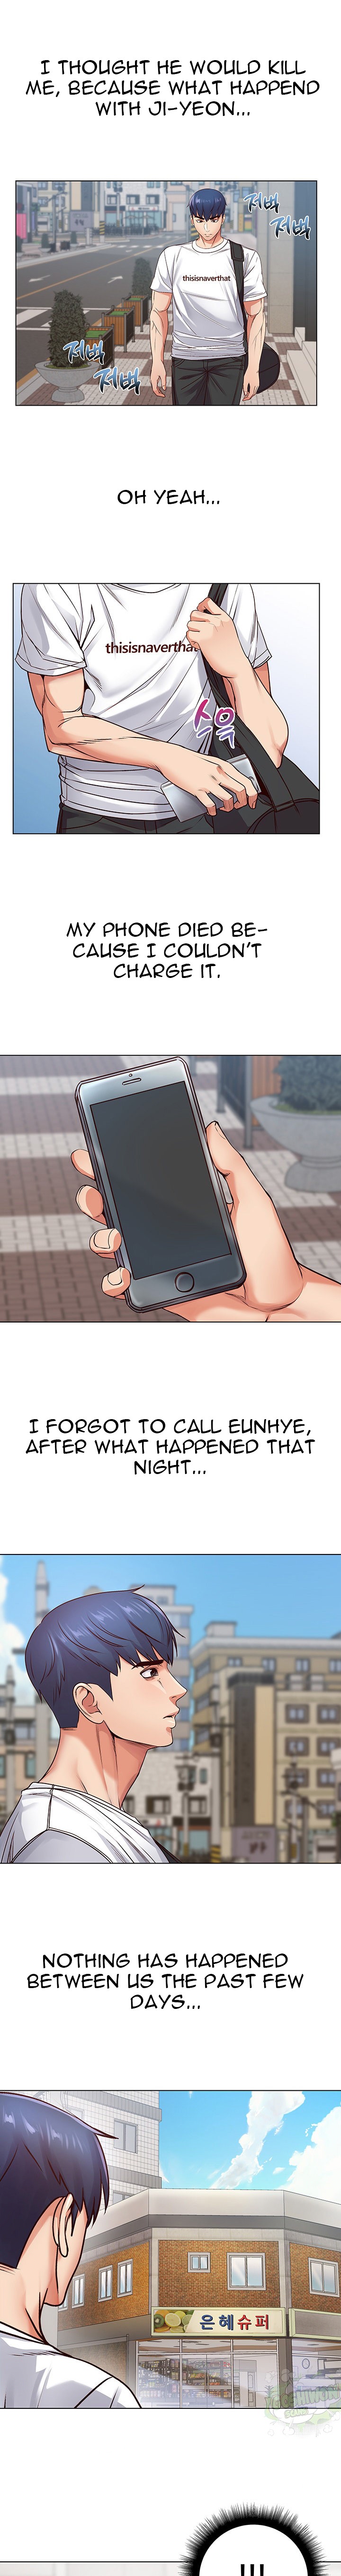 Eunhye